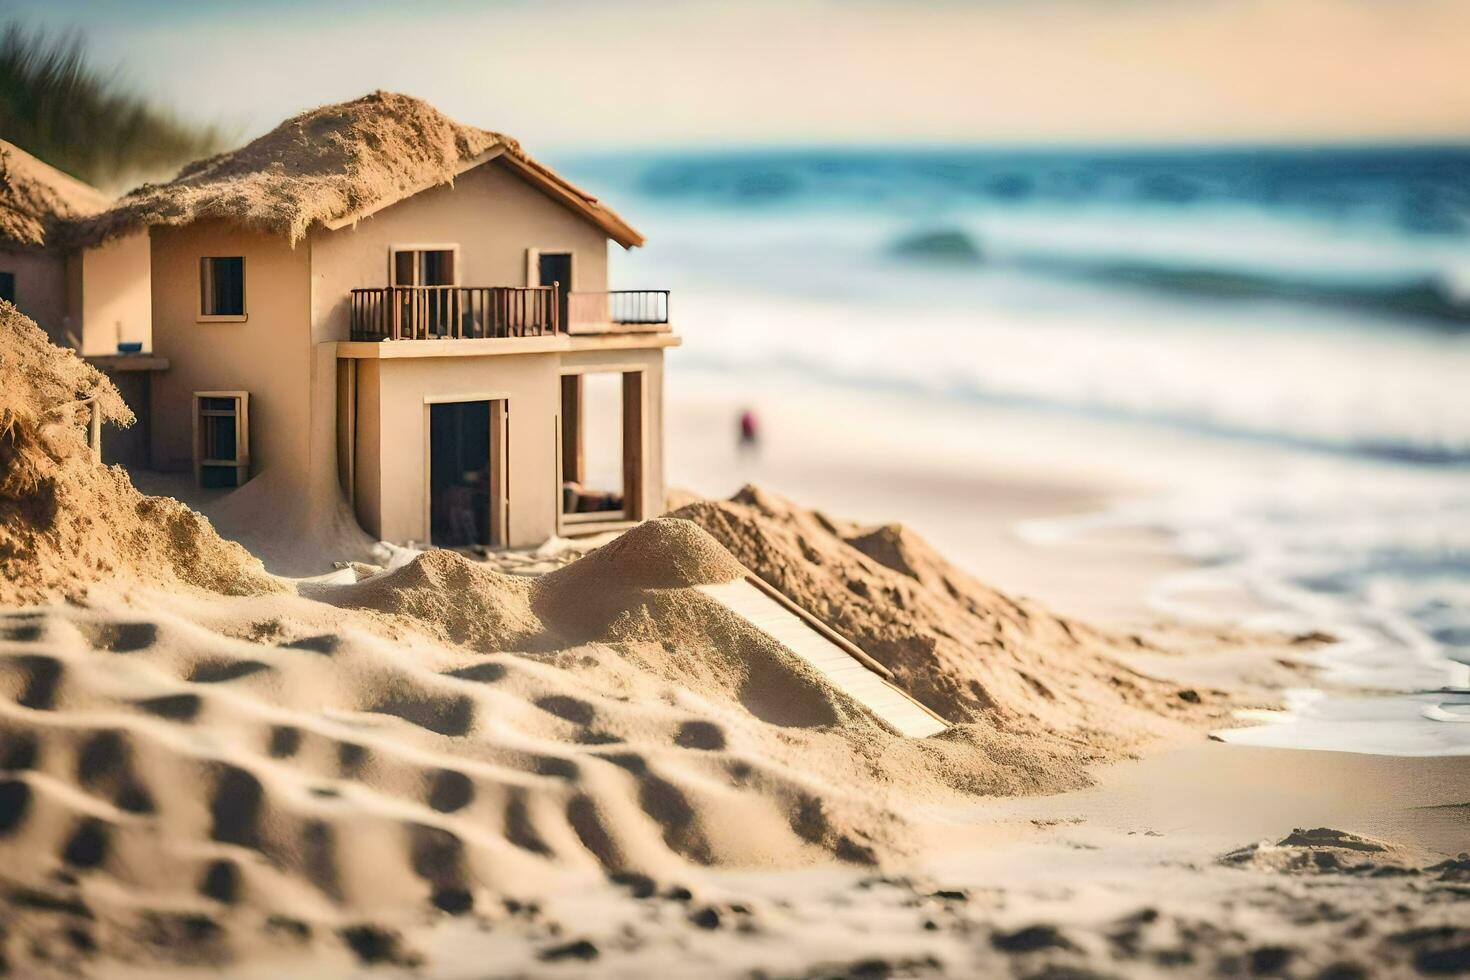 ein Miniatur Haus auf das Strand mit Sand. KI-generiert foto